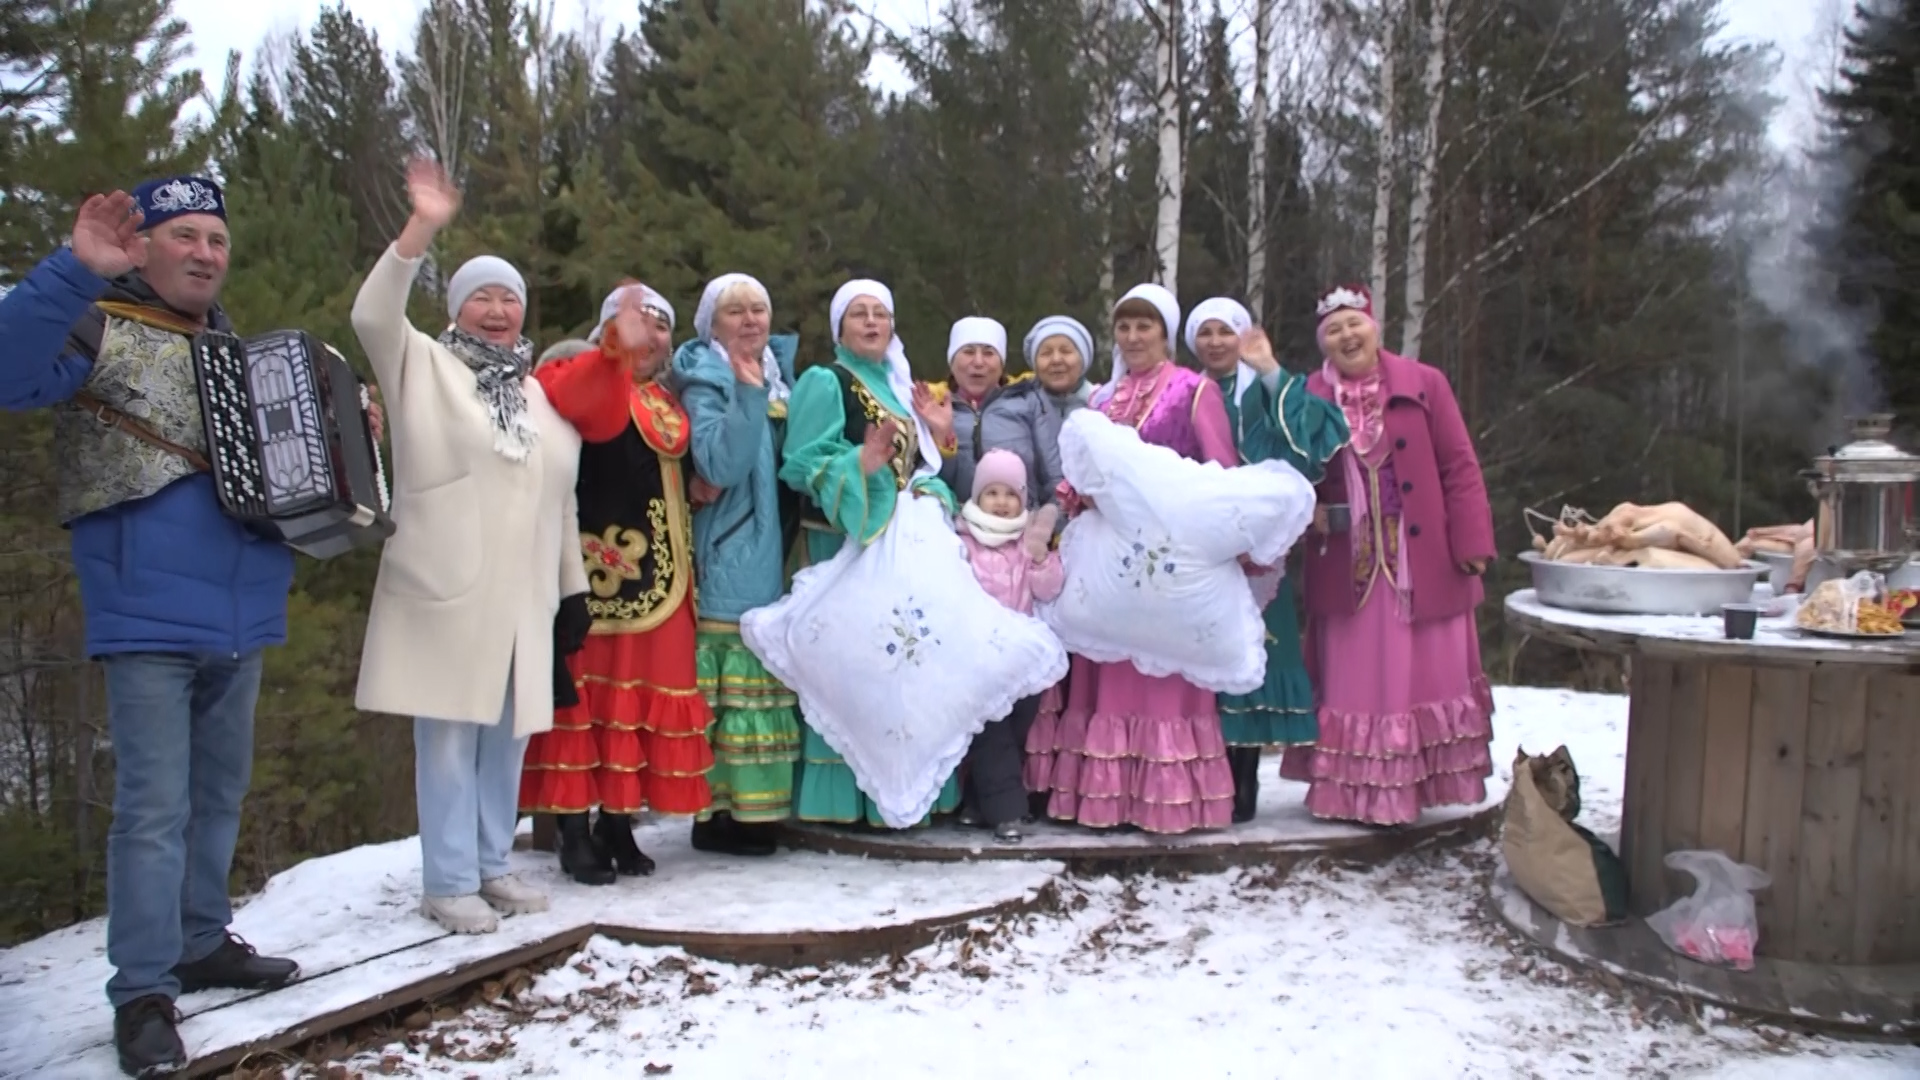 Представители татаро-башкирской диаспоры отметили праздник «Гусиное перо».